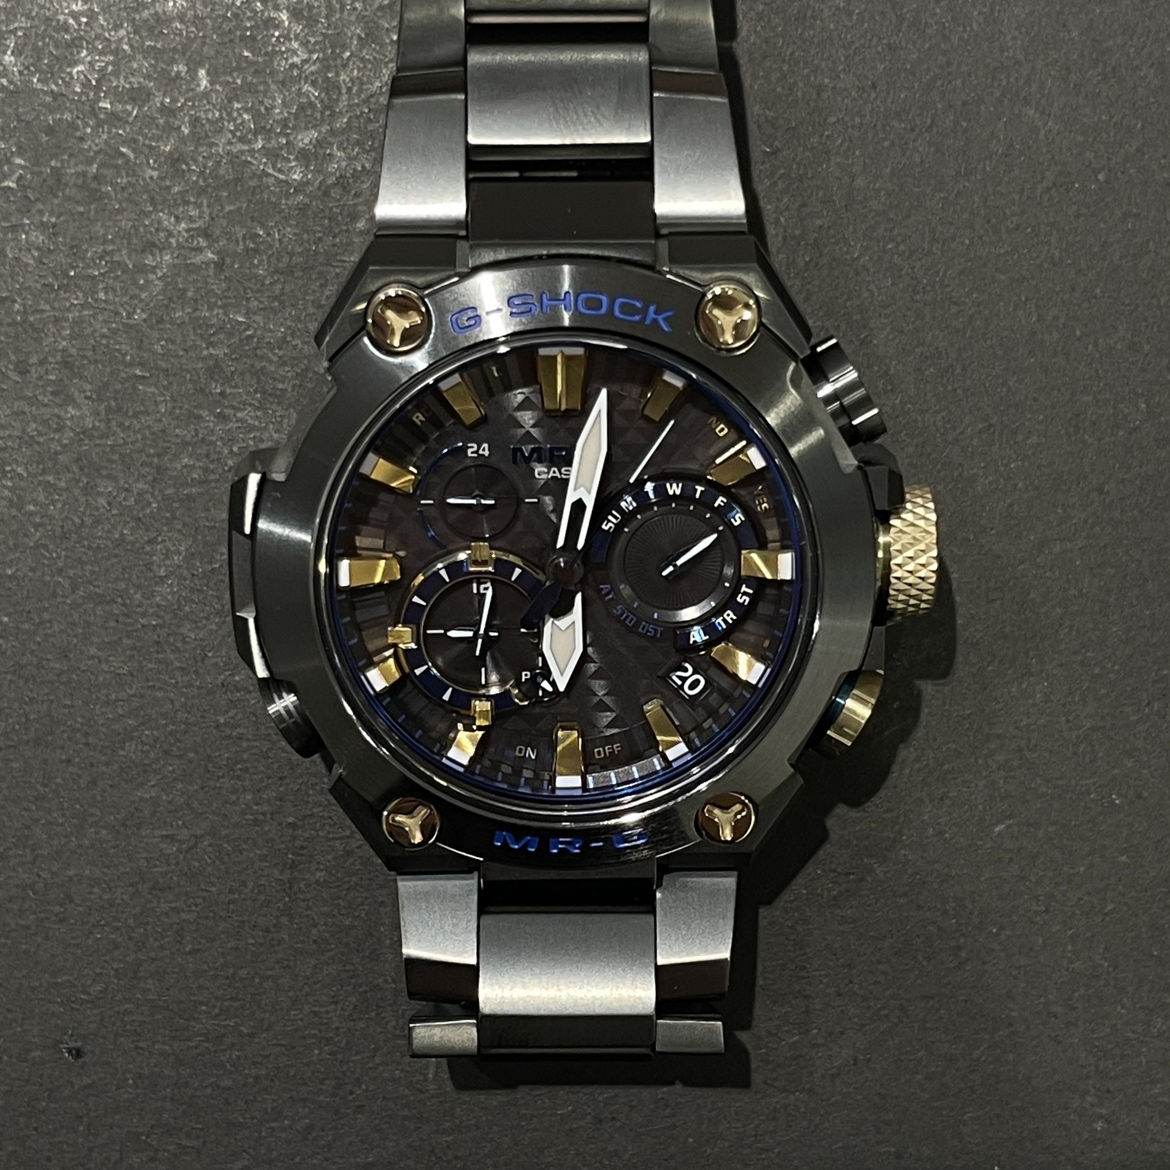 ジーショックのMRG-B2000B-1AJR 勝色 チタン Bluetooth搭載 電波ソーラー腕時計の買取実績です。